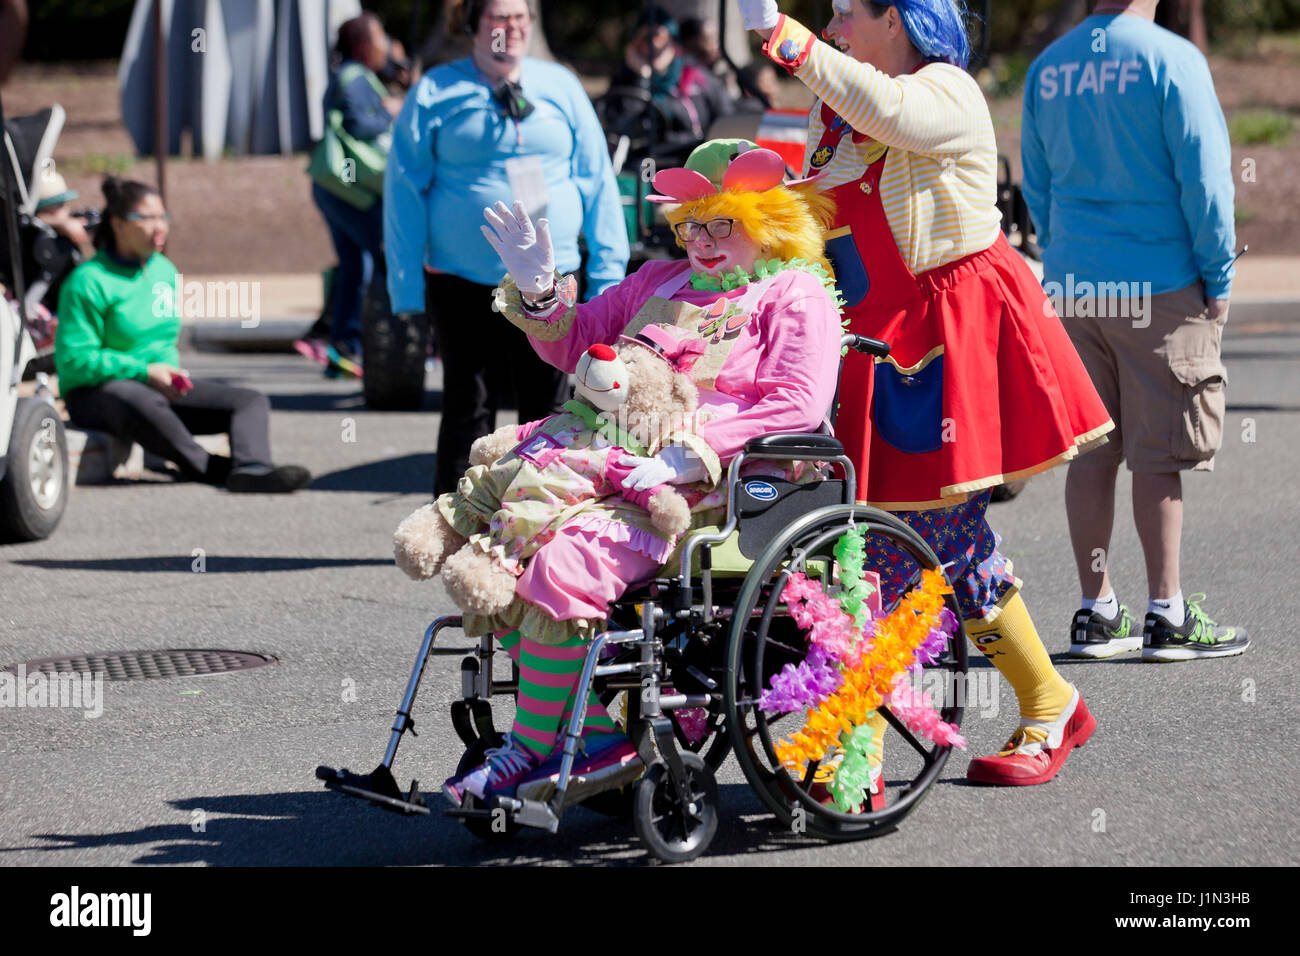 Woman in wheelchair habillés en costume clown au cours de parade - USA Banque D'Images